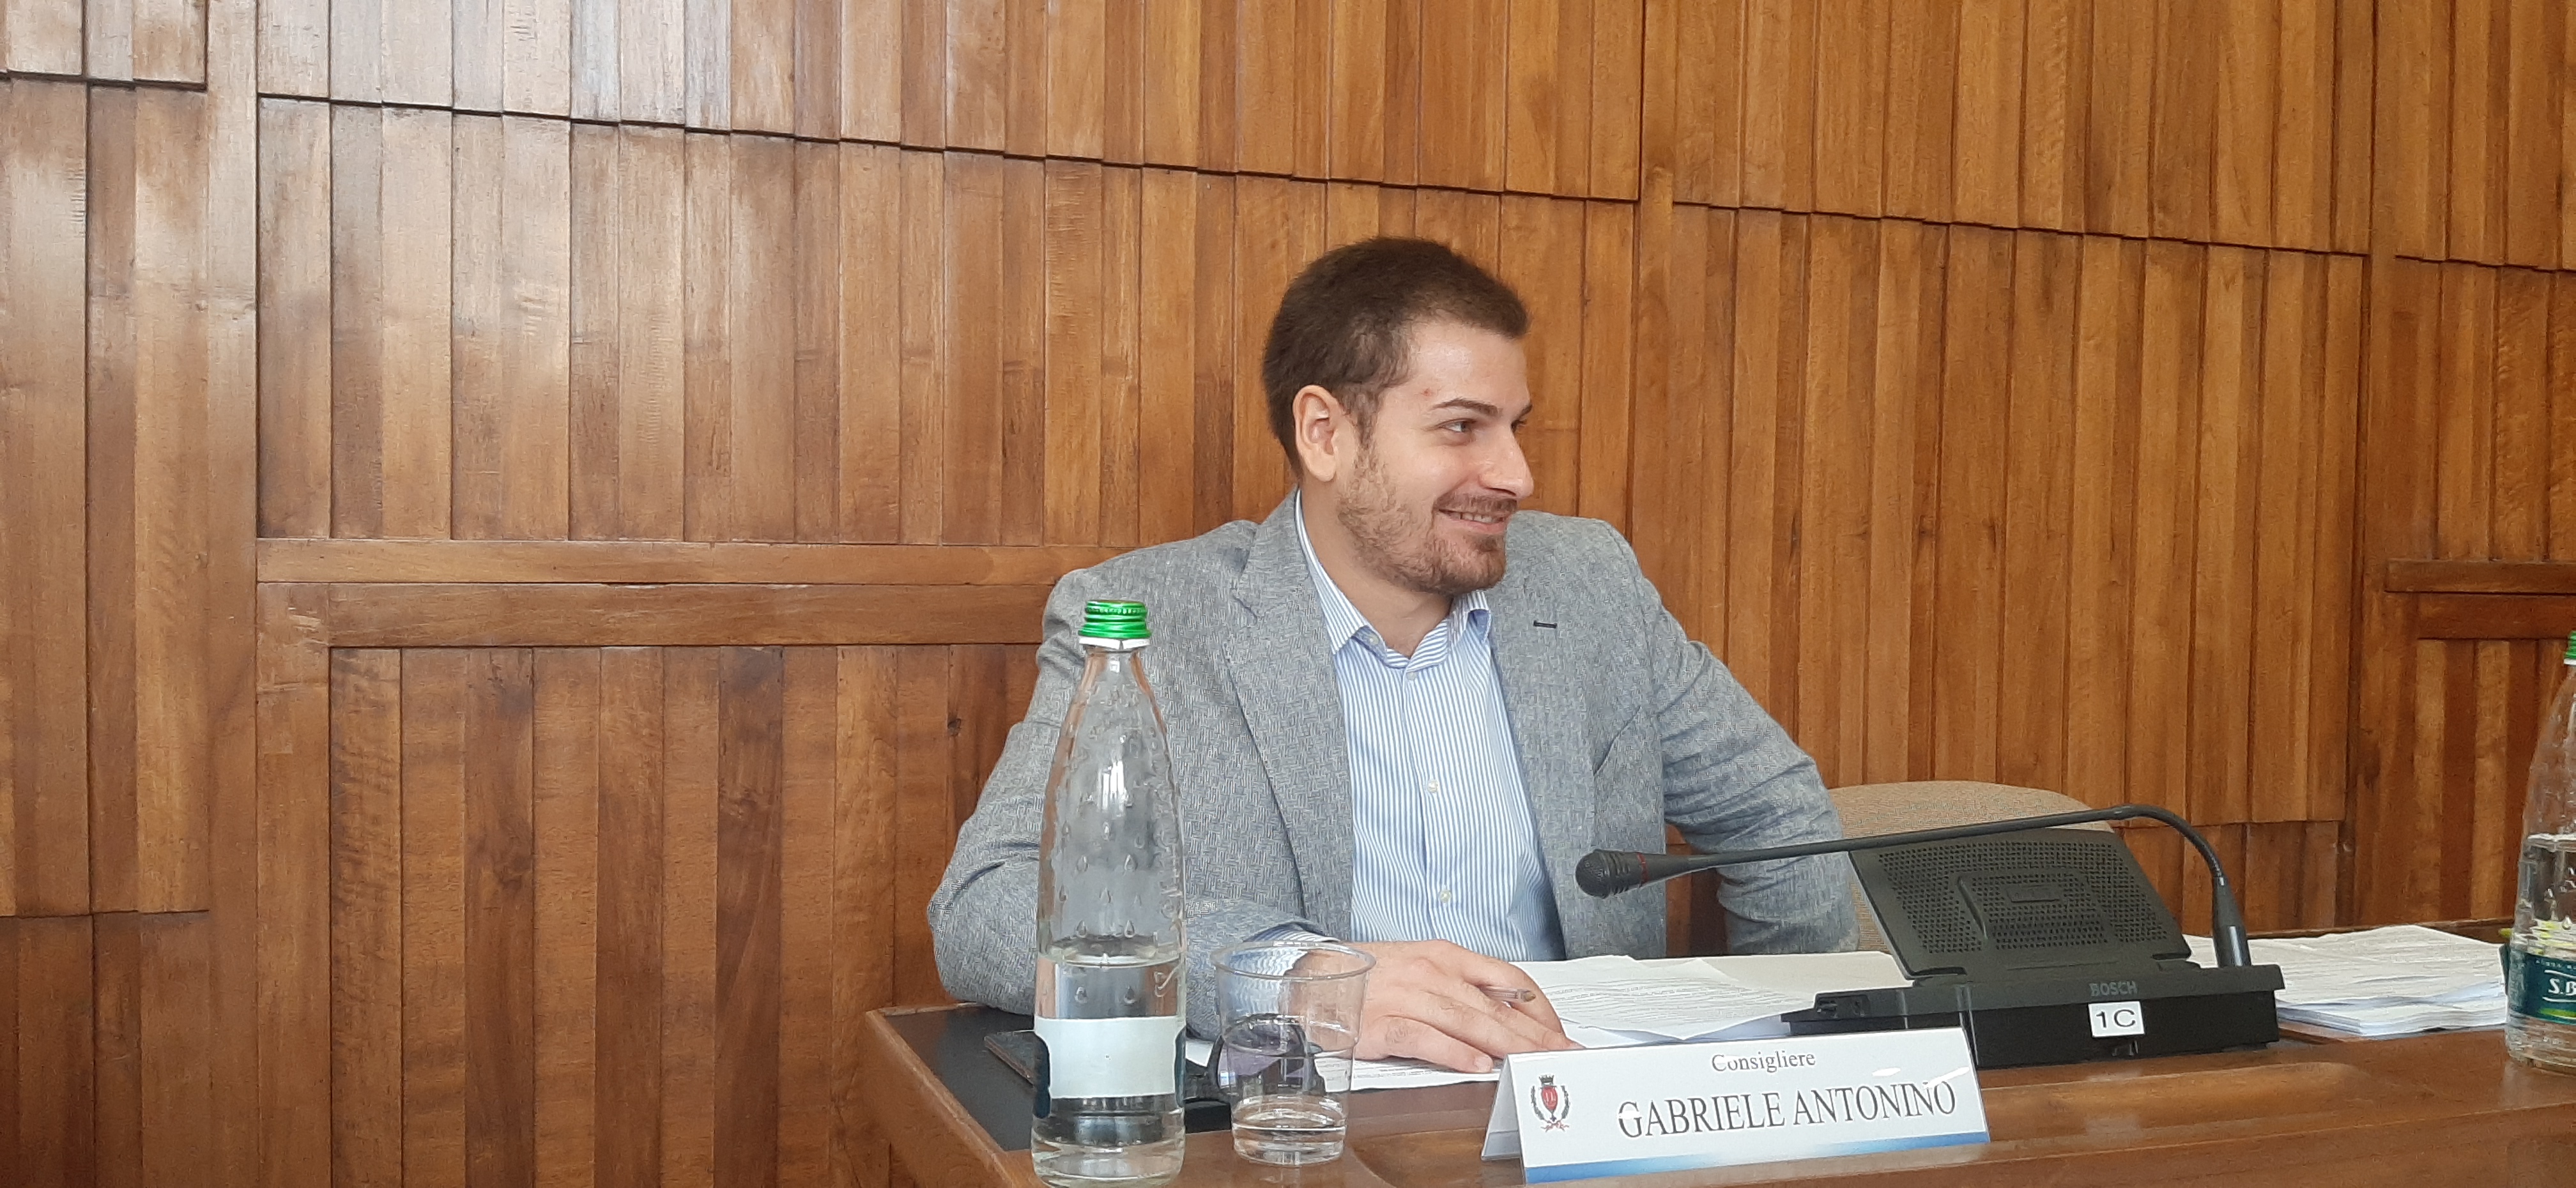 Regionali: Gabriele Antonino vicino a una candidatura con Fitto?